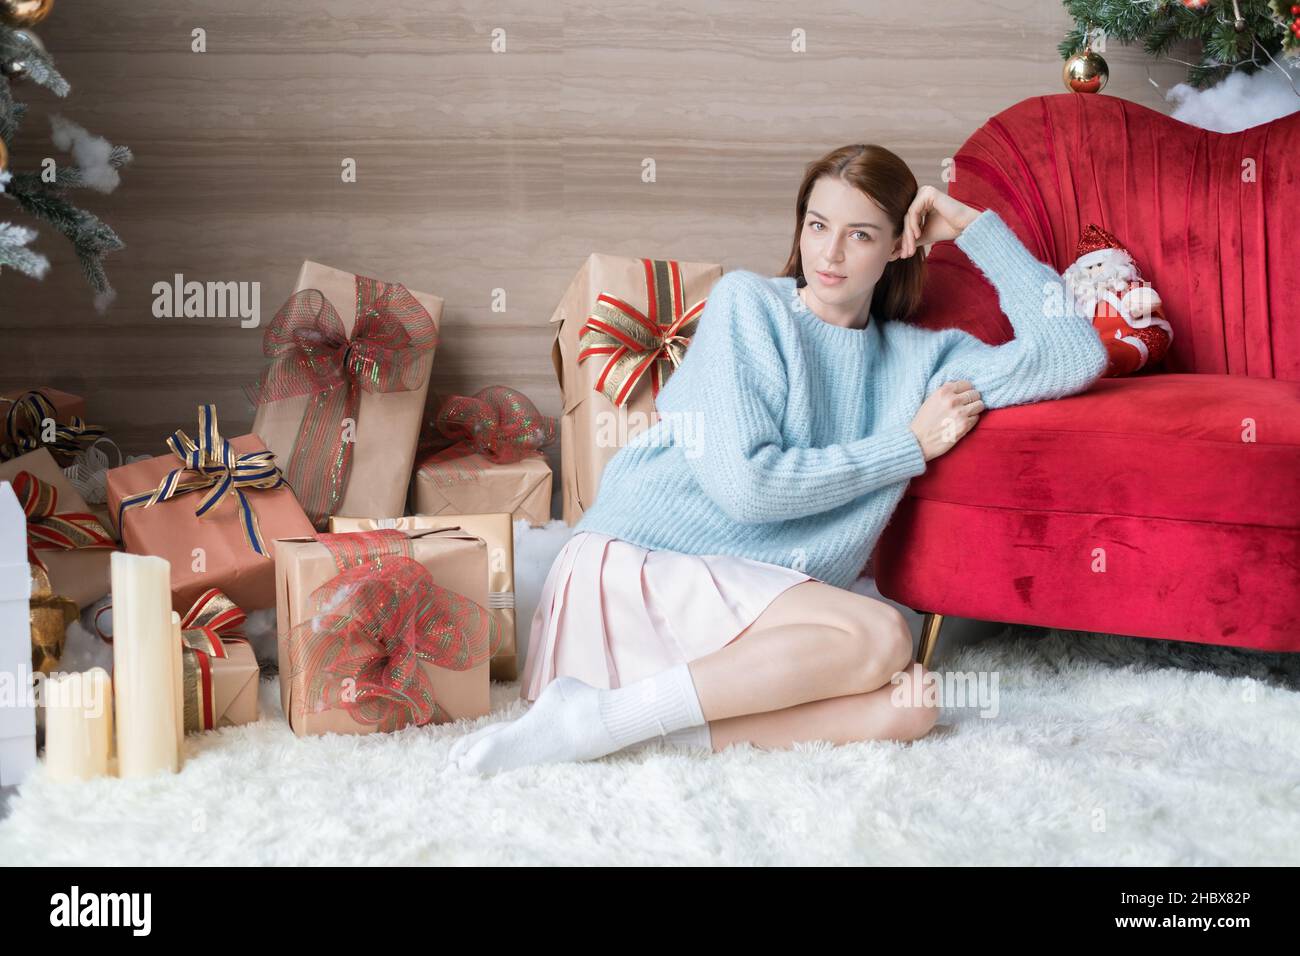 Ritratto di Capodanno della bella giovane donna caucasica in maglione azzurro, gonna bianca e calzini. Adorabile ragazza seduta vicino a scatole regalo con archi. Foto Stock